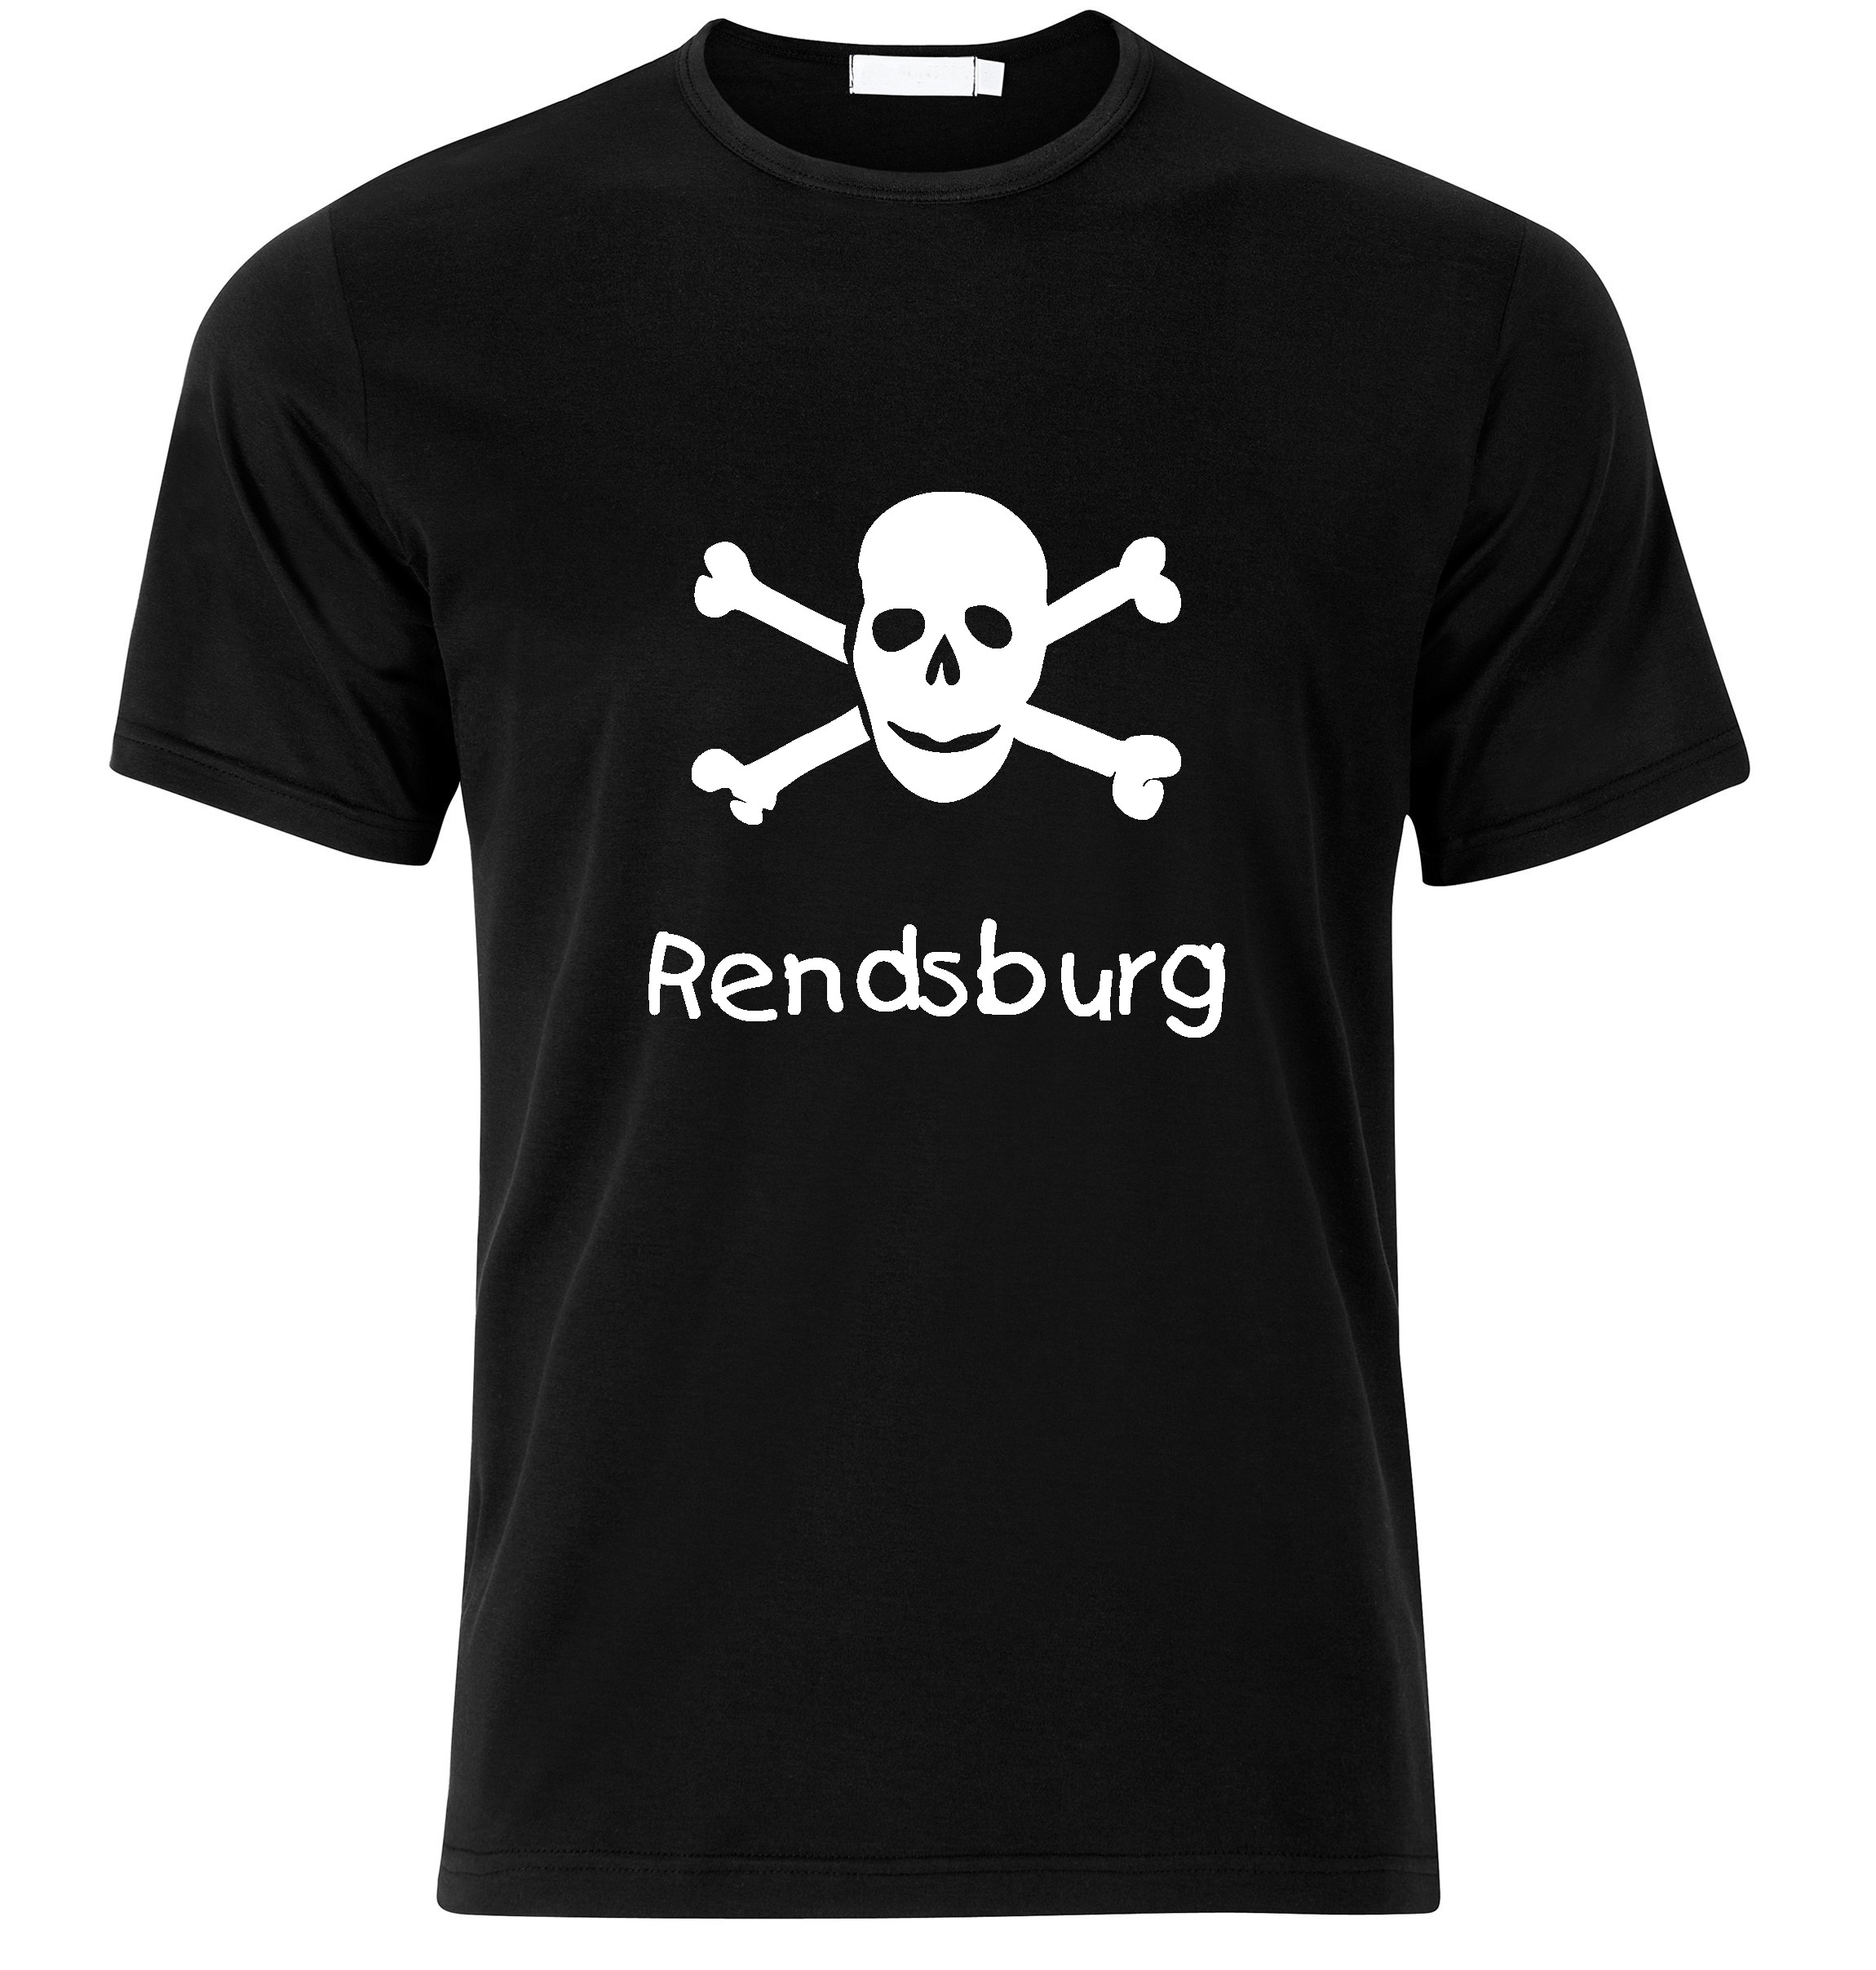 T-Shirt Rendsburg Jolly Roger, Totenkopf